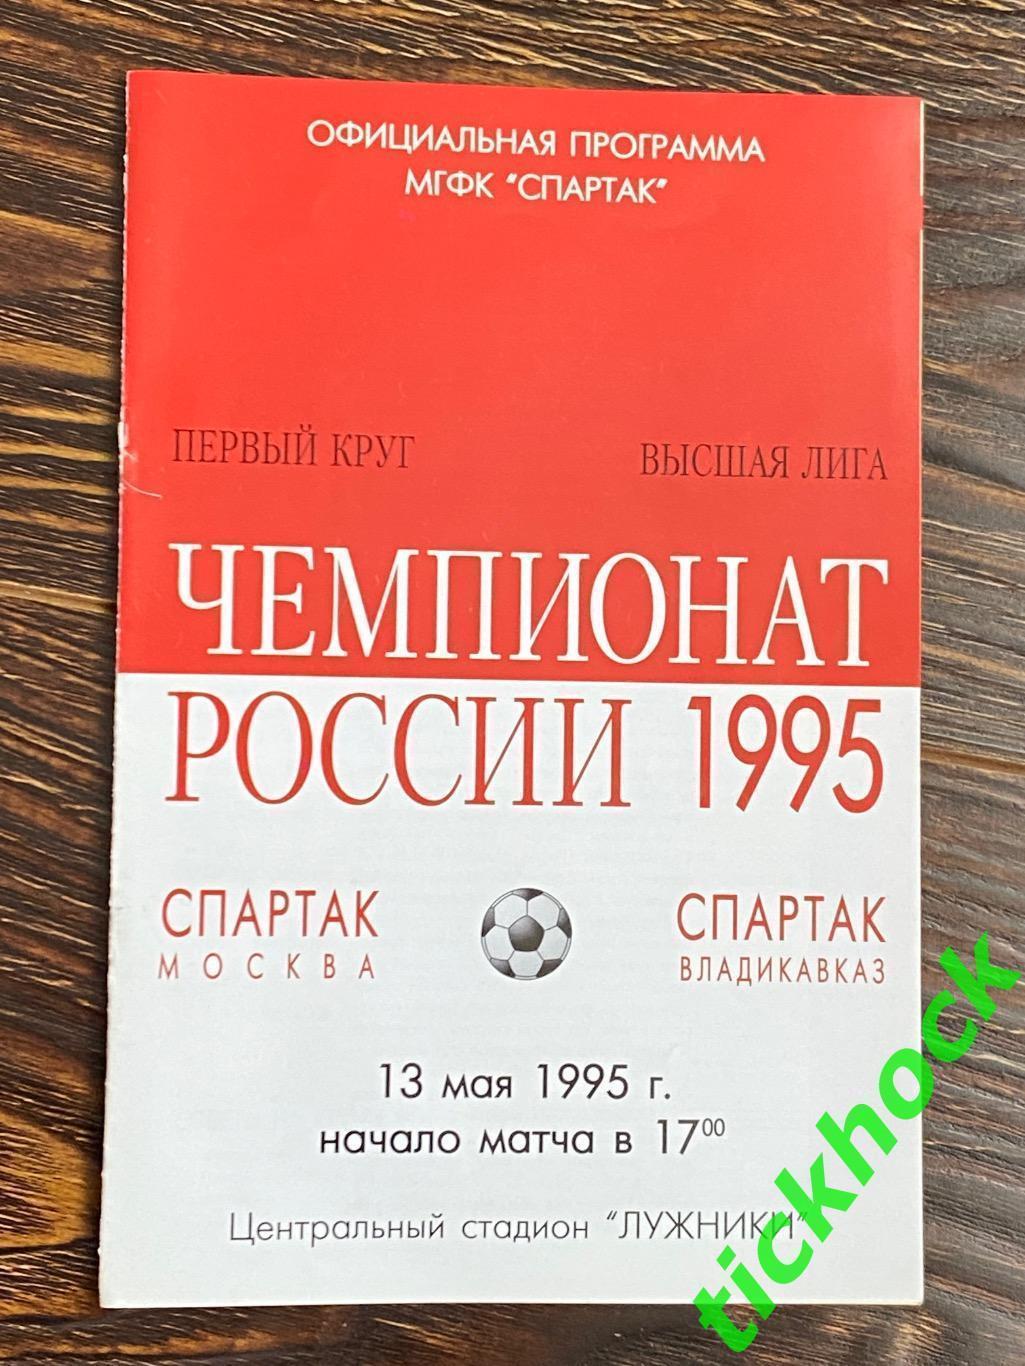 13.05. 1995 Спартак Москва - Спартак Владикавказ - SY 1